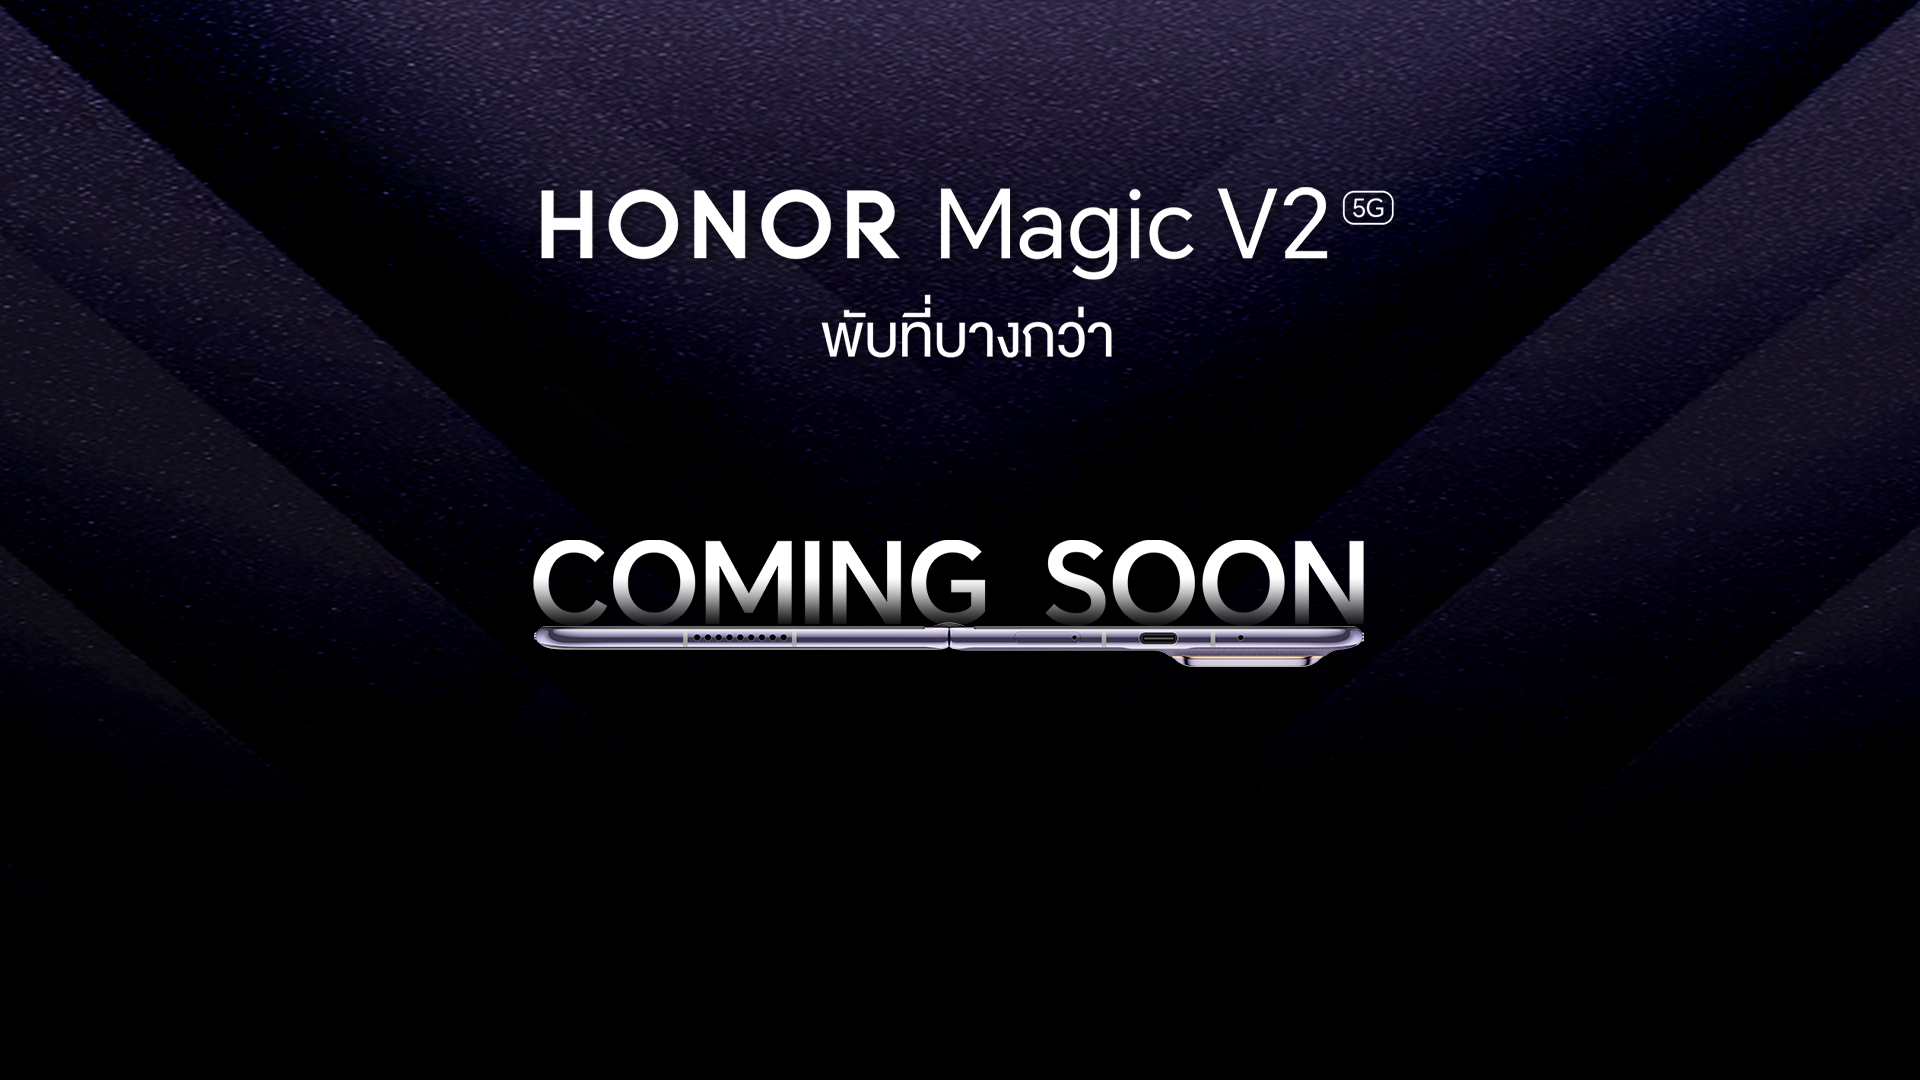 มาแน่! HONOR Magic V2 มือถือพับได้เตรียมเผยโฉมในเมืองไทย 7 กุมภาพันธ์ นี้